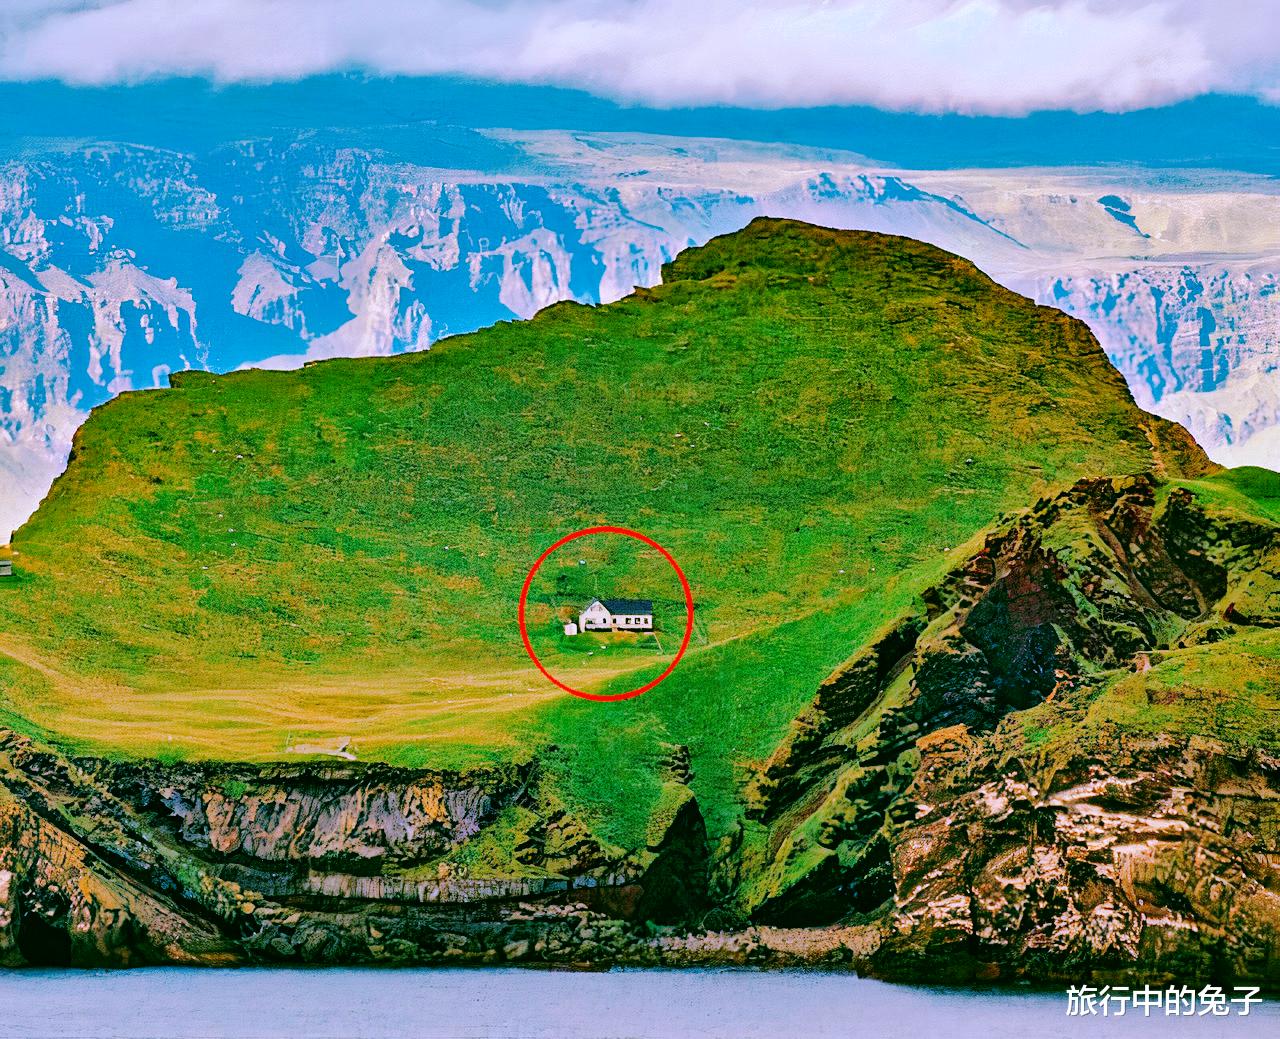 |45万平方米的小岛，四周都是海水和峭壁，上面却矗立着一栋房屋？